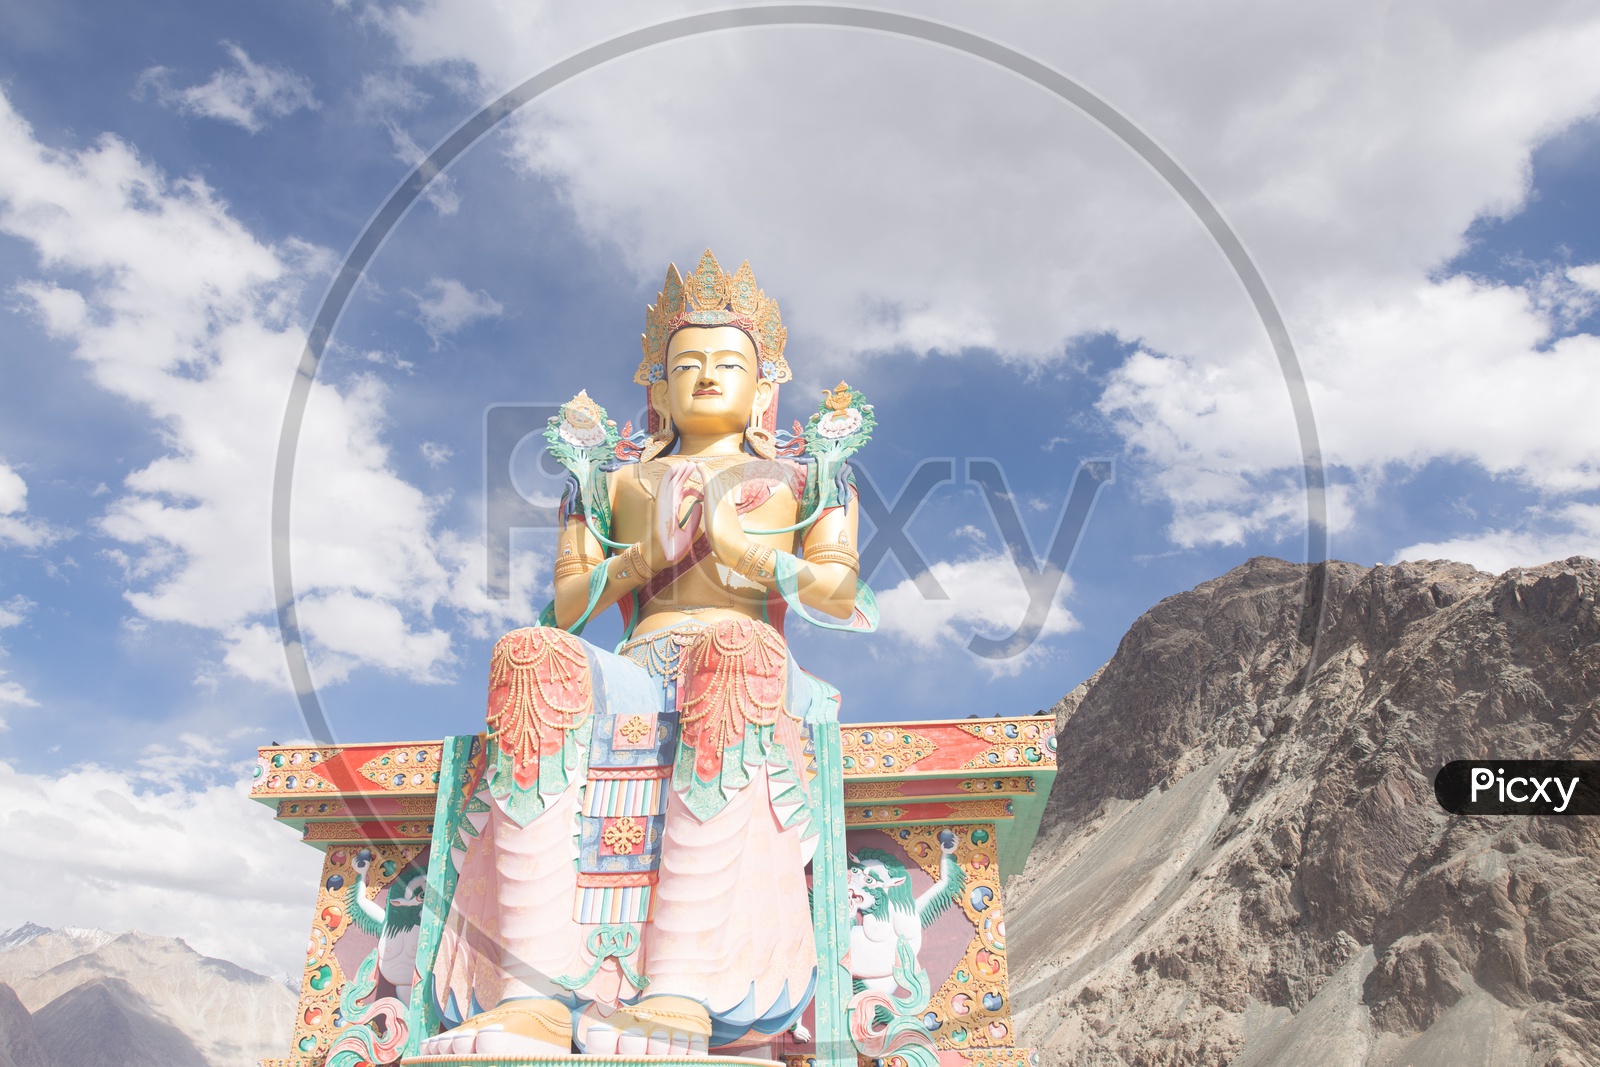 Diskit Monastery Buddha Statue in leh